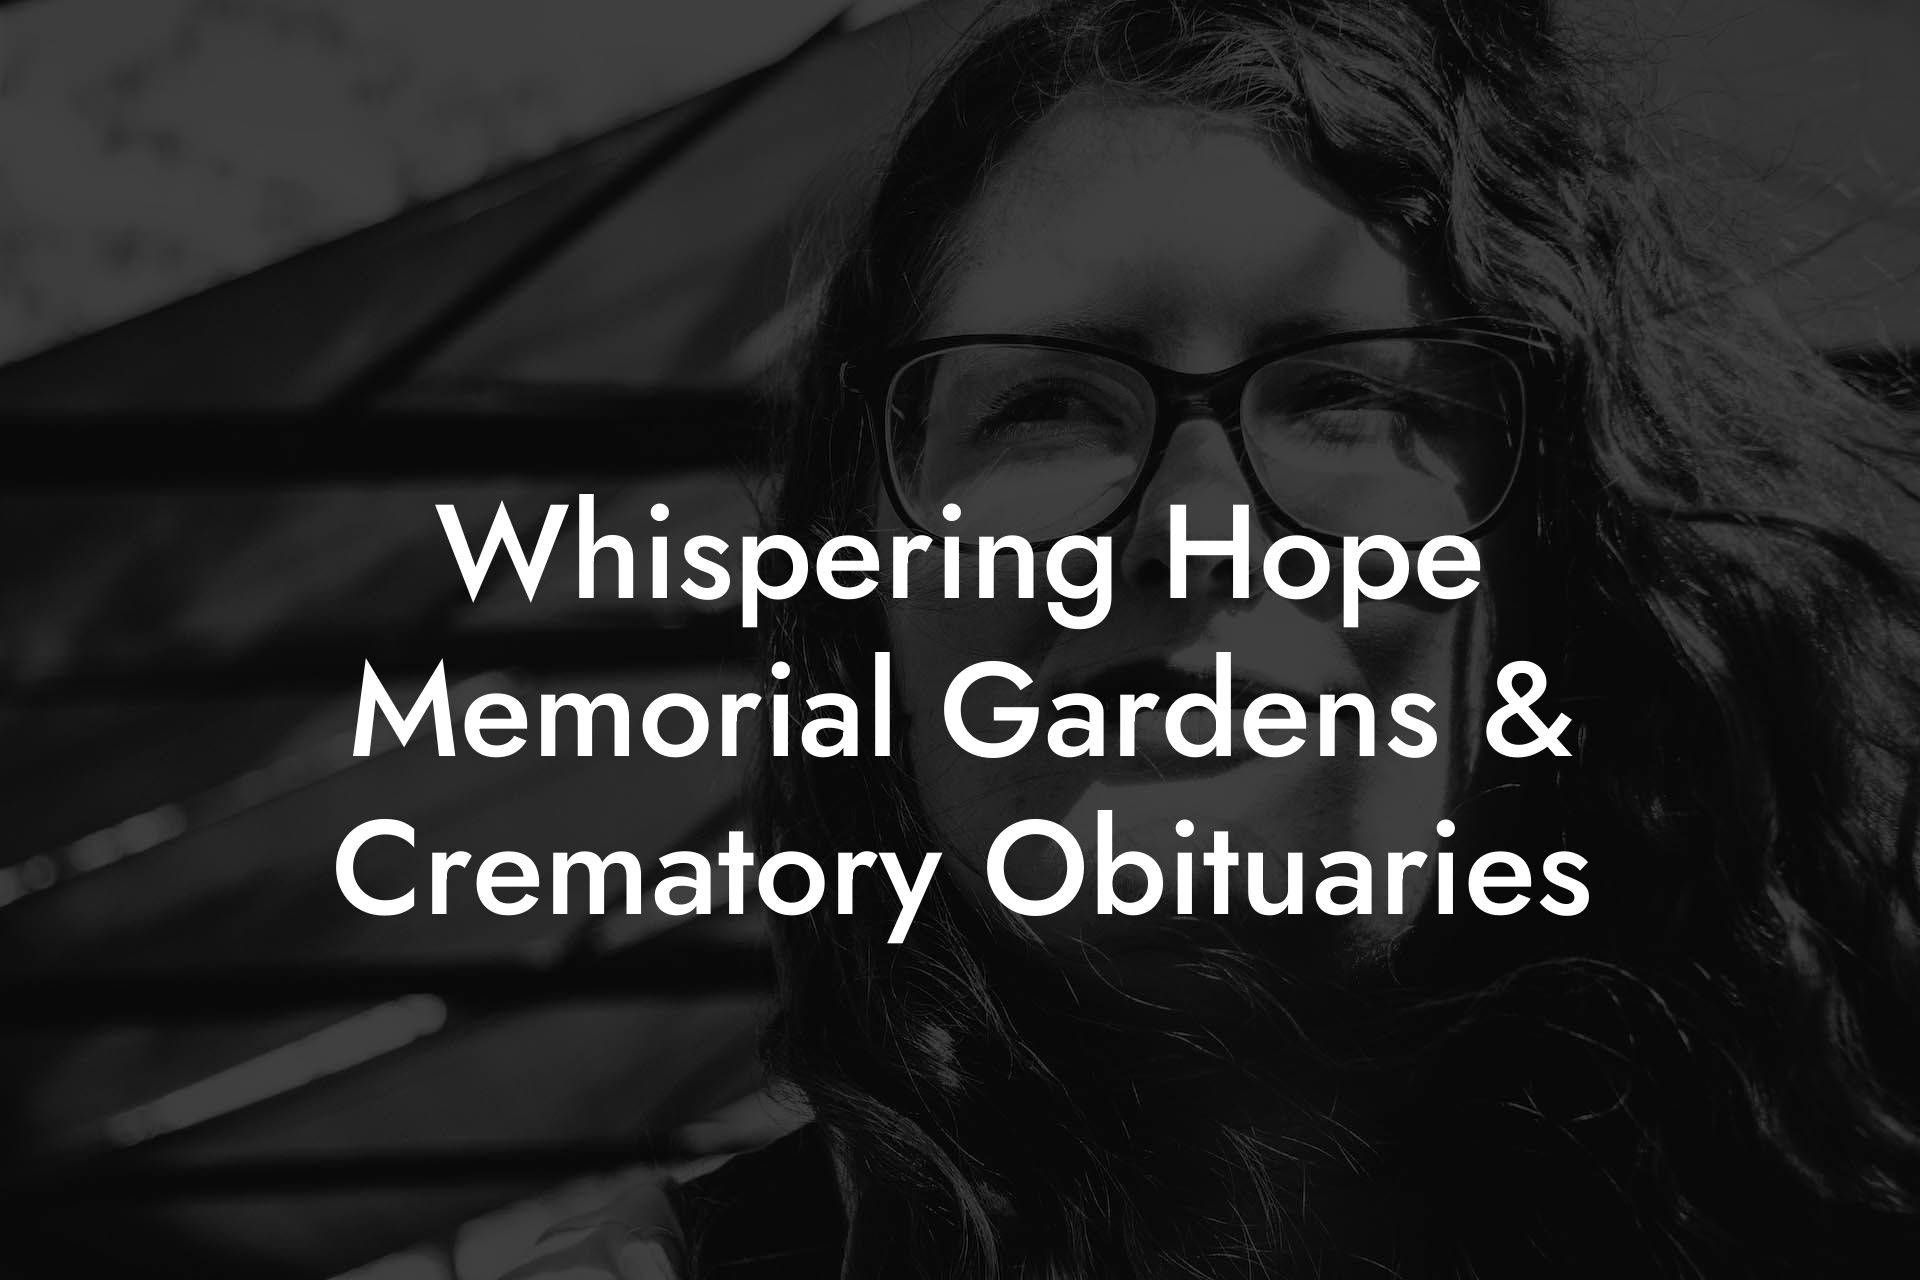 Whispering Hope Memorial Gardens & Crematory Obituaries